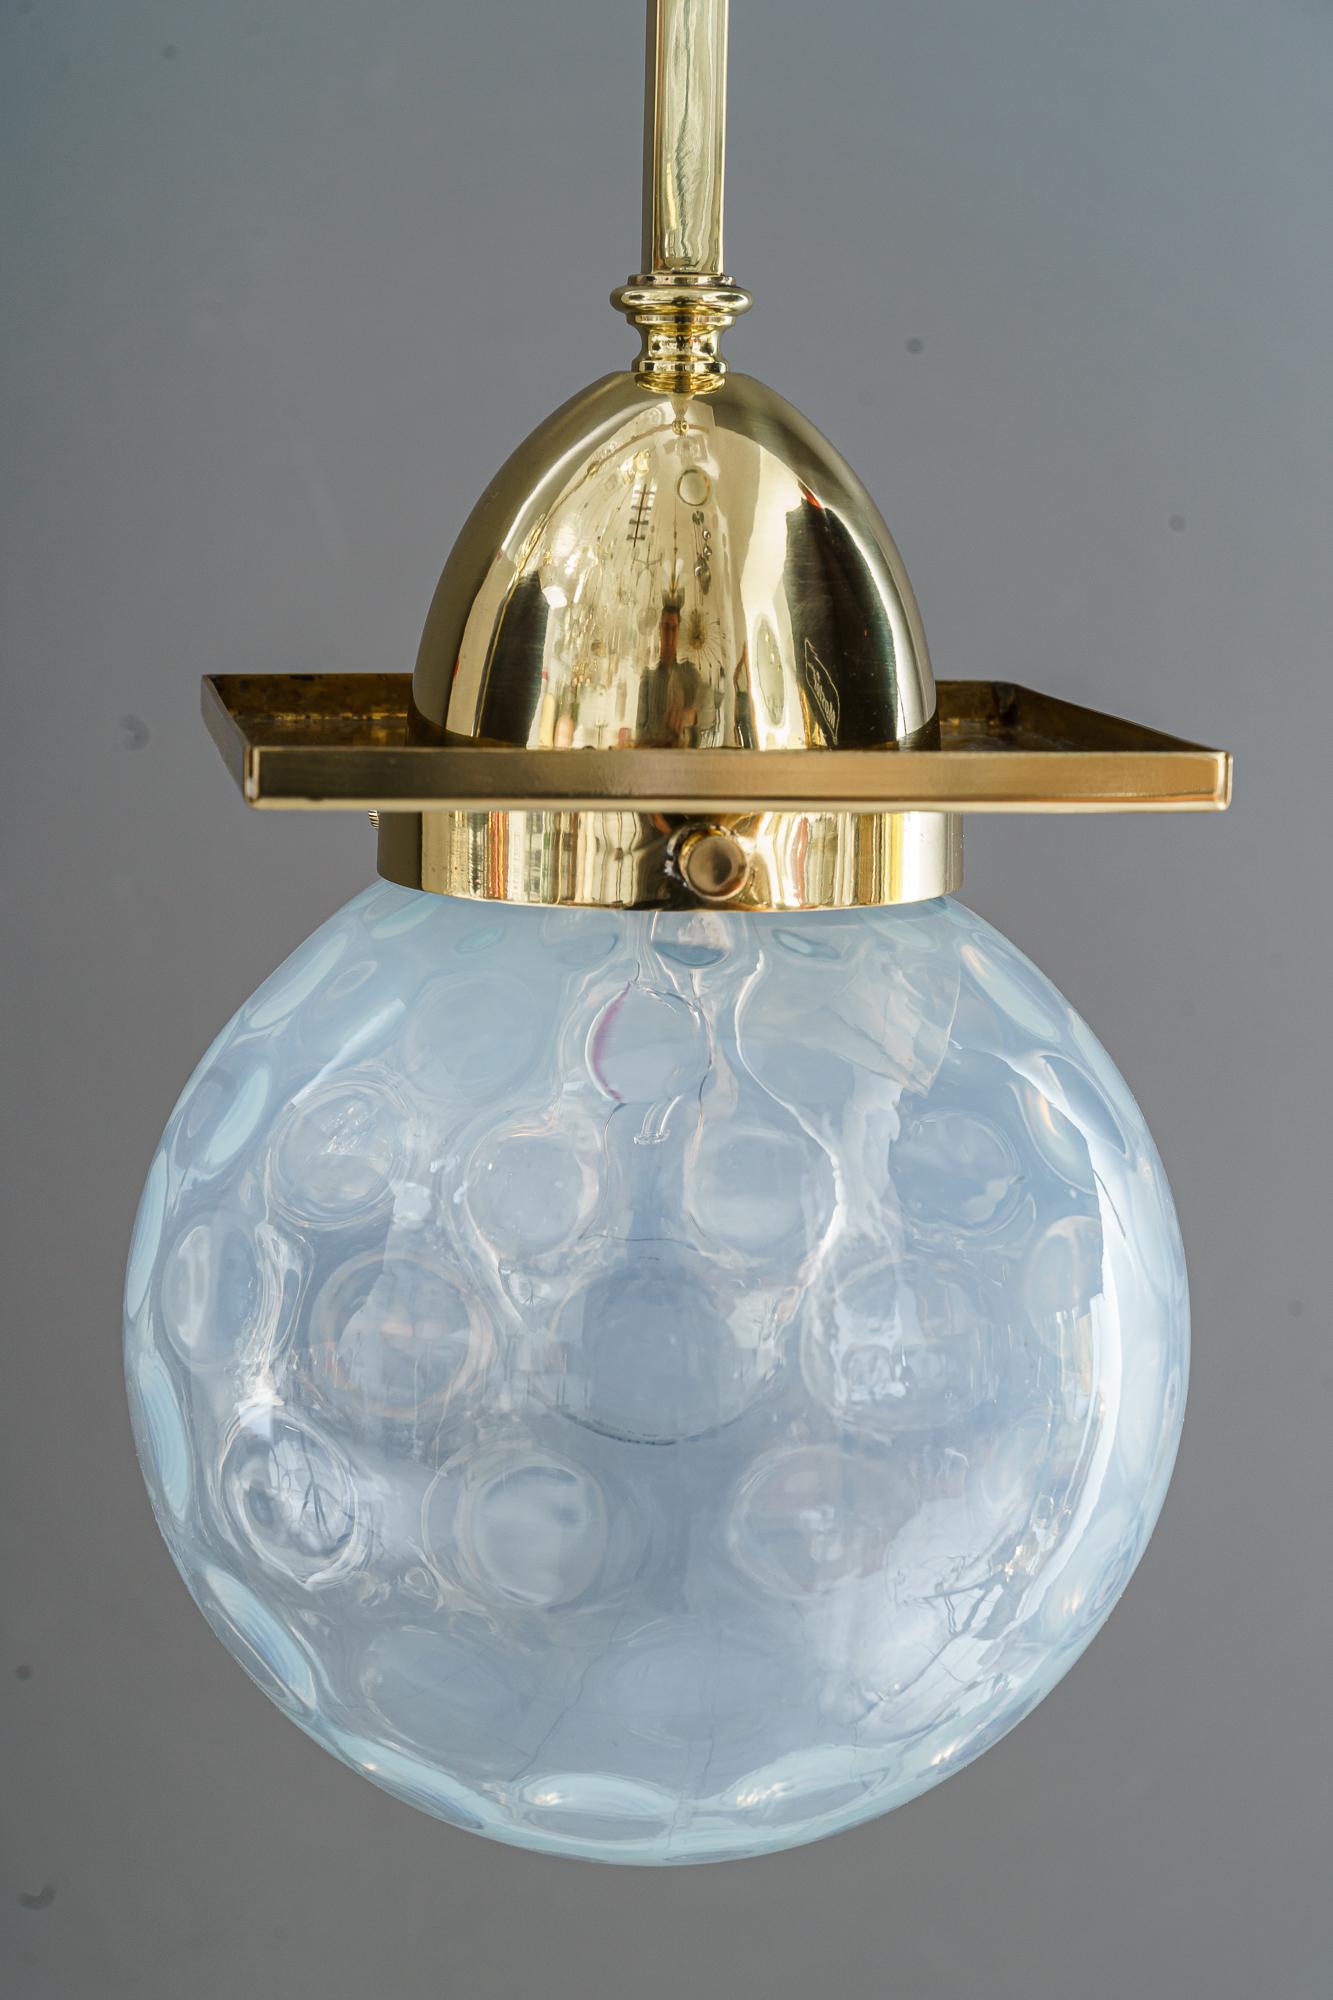 2 Art Deco Deckenlampen mit original Glasschirmen Wien um 1920er Jahre 
Die Glasschirme wurden von böhmischen Glasherstellern bezogen, darunter auch das renommierte Unternehmen Johann Loetz-Witwe Klostermühle.
Messing poliert und emailliert